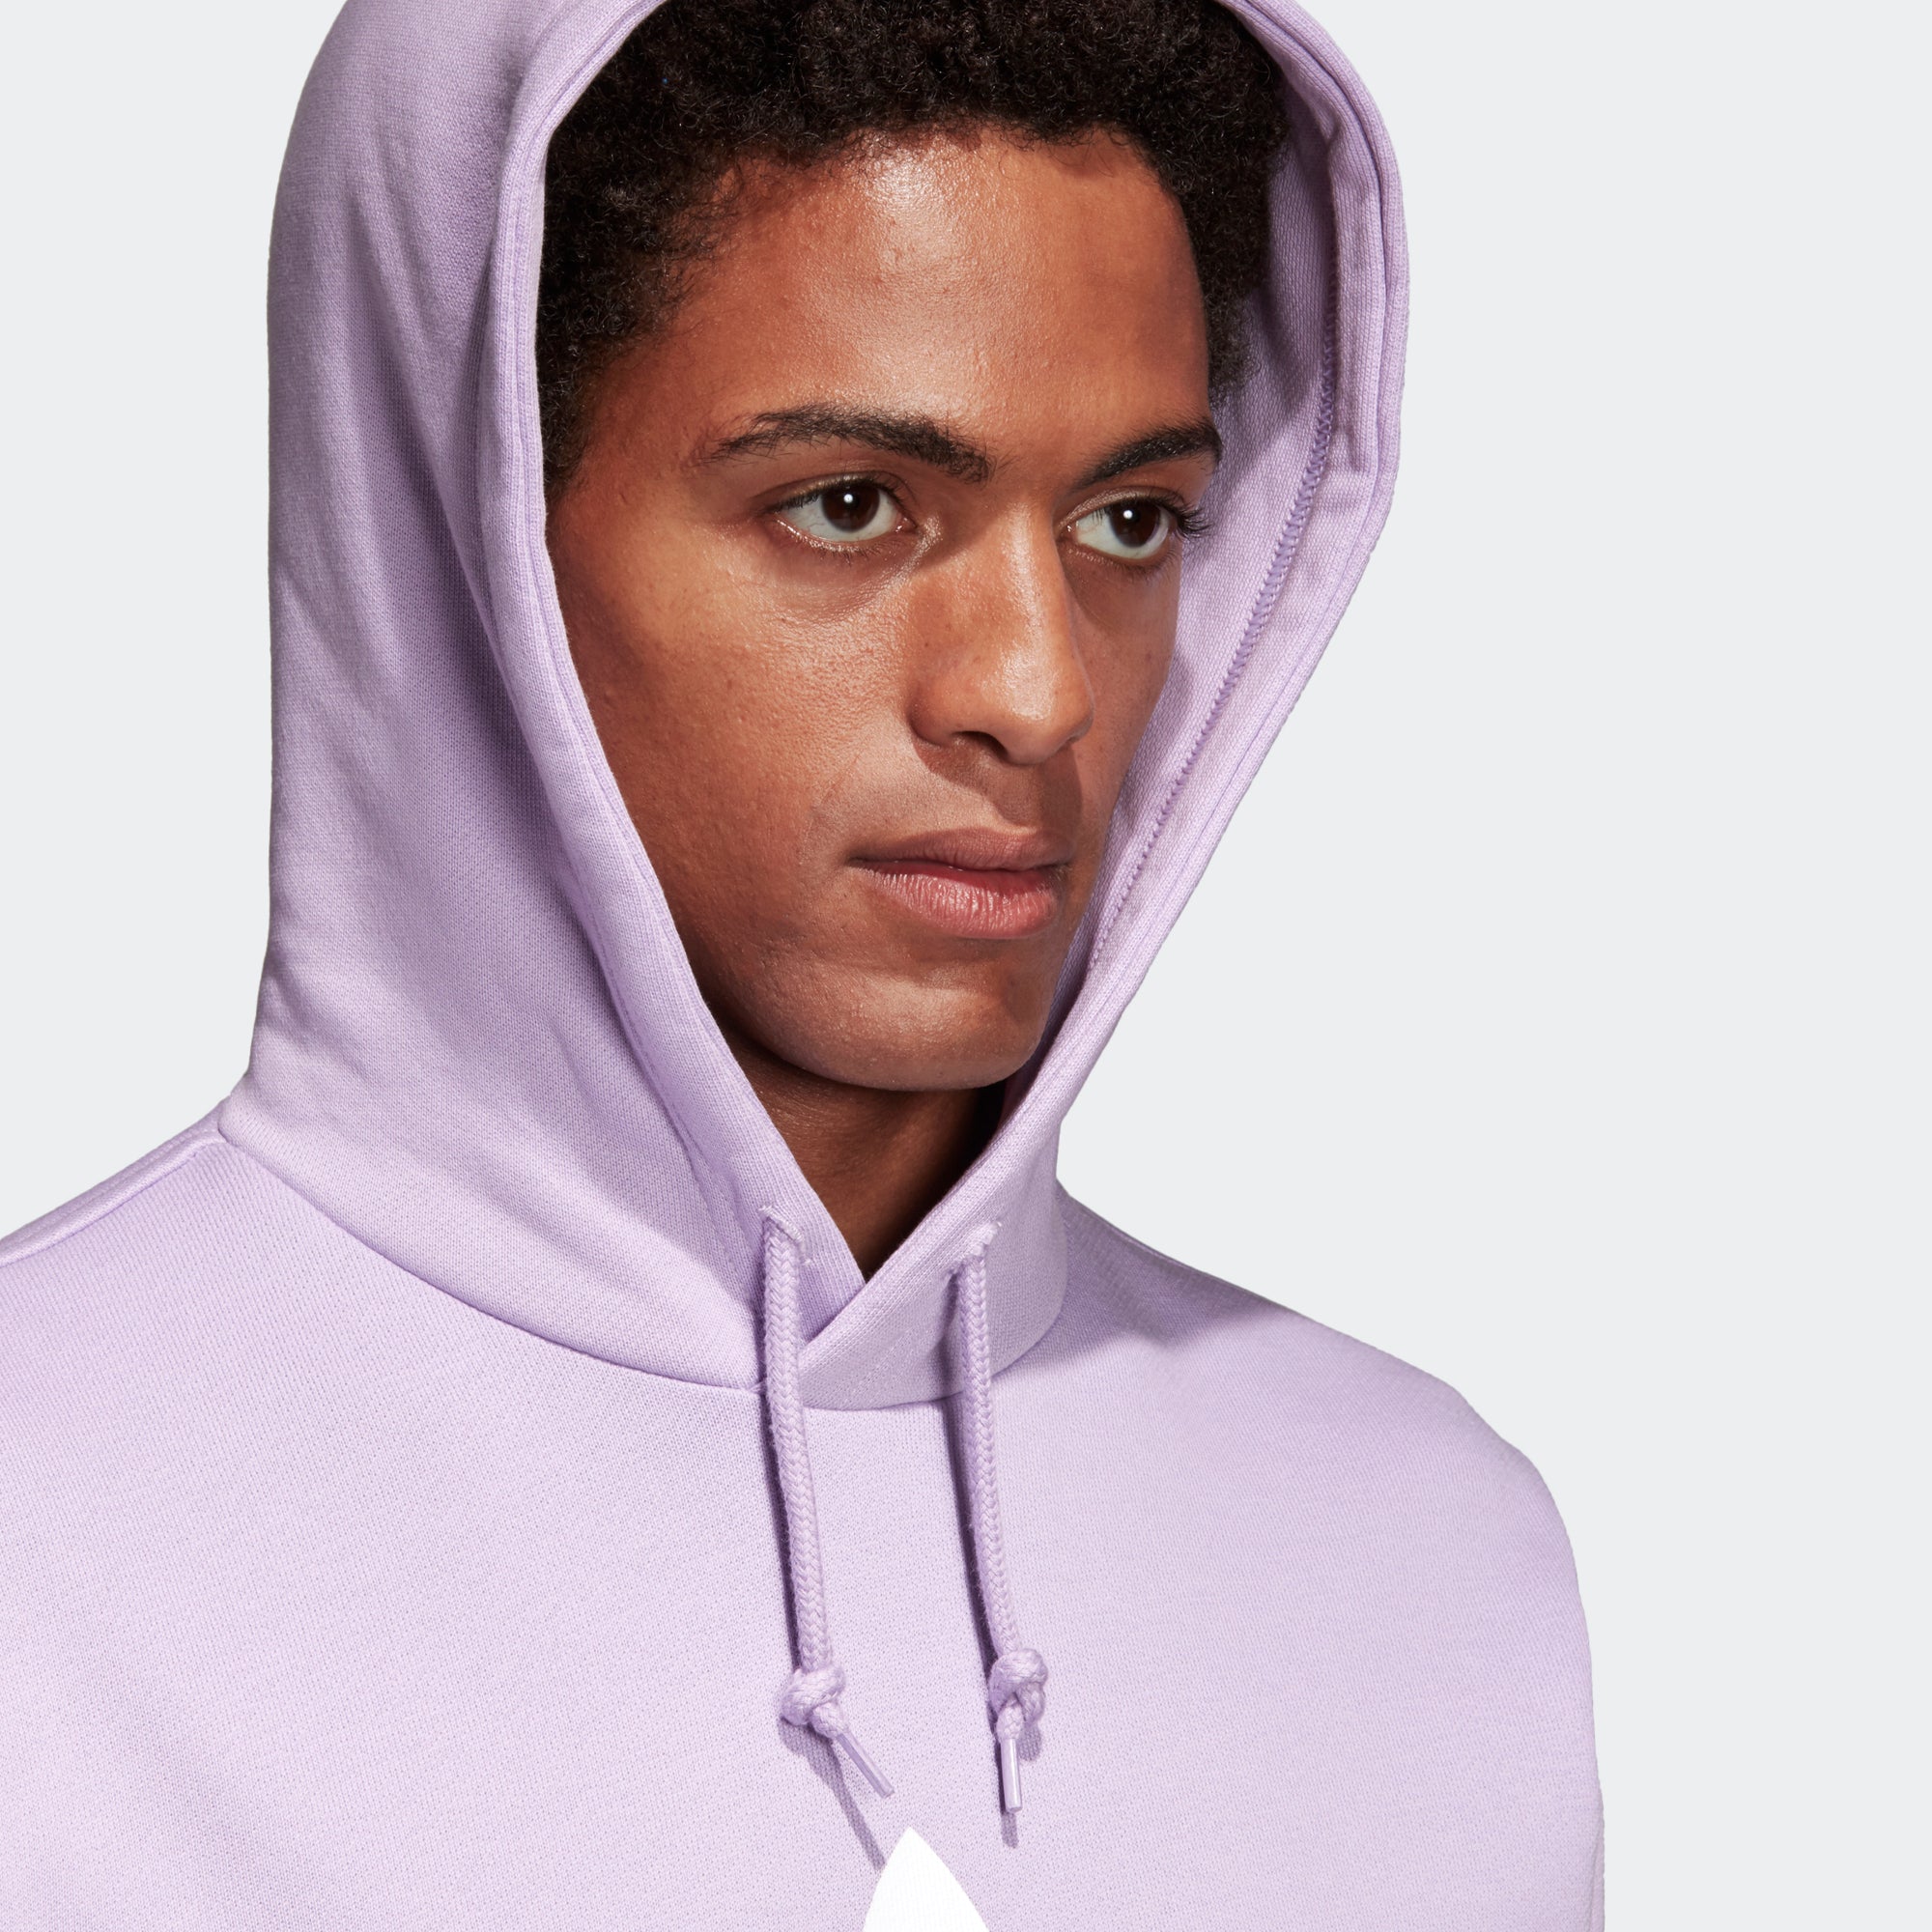 adidas purple glow hoodie